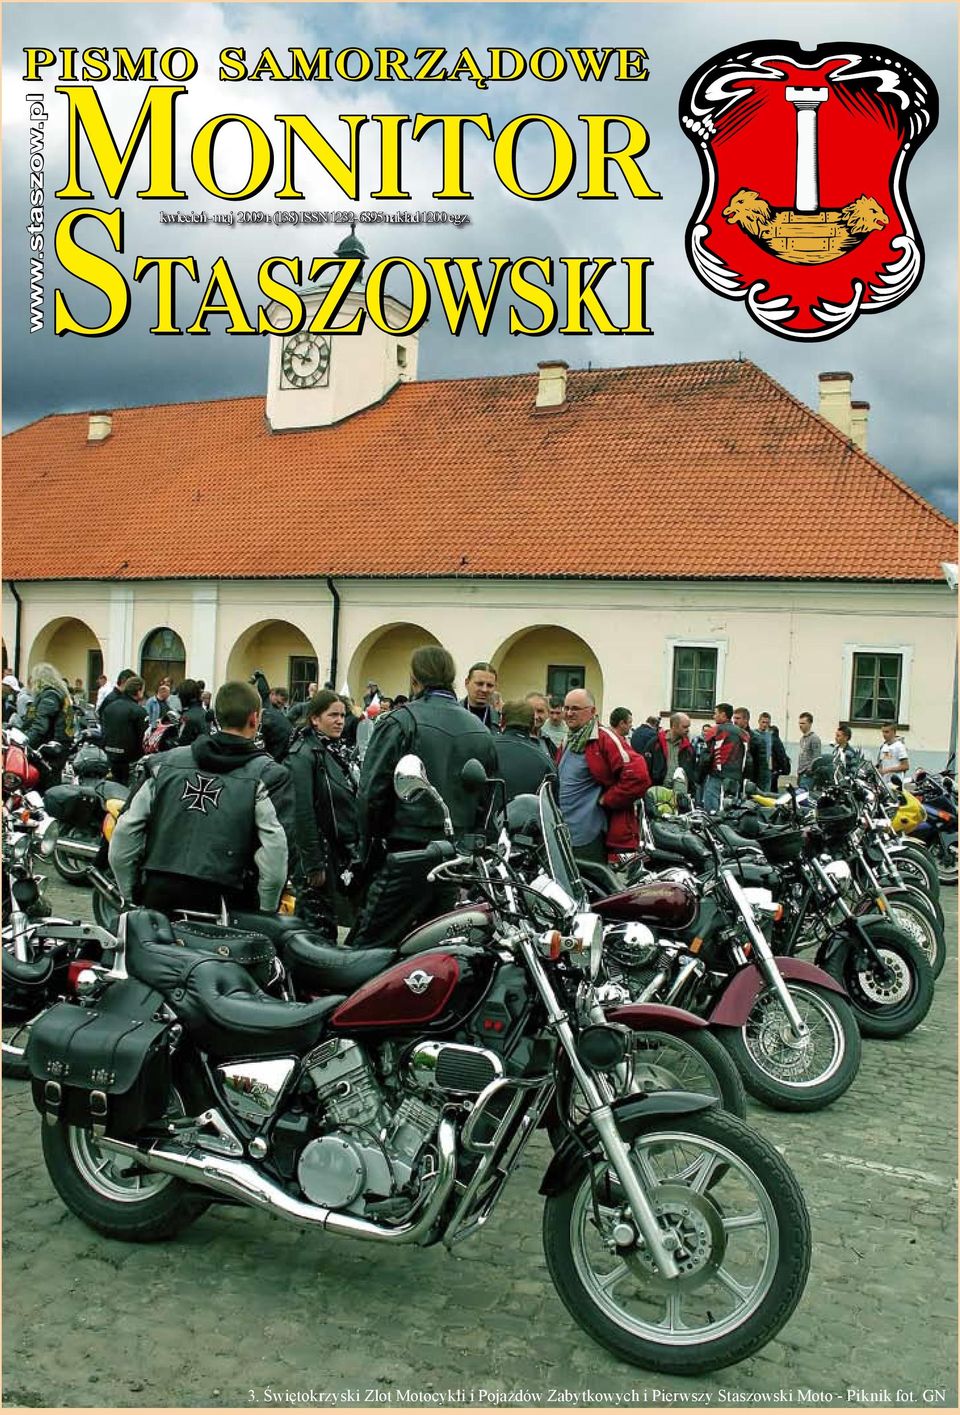 Świętokrzyski Zlot Motocykli i Pojazdów